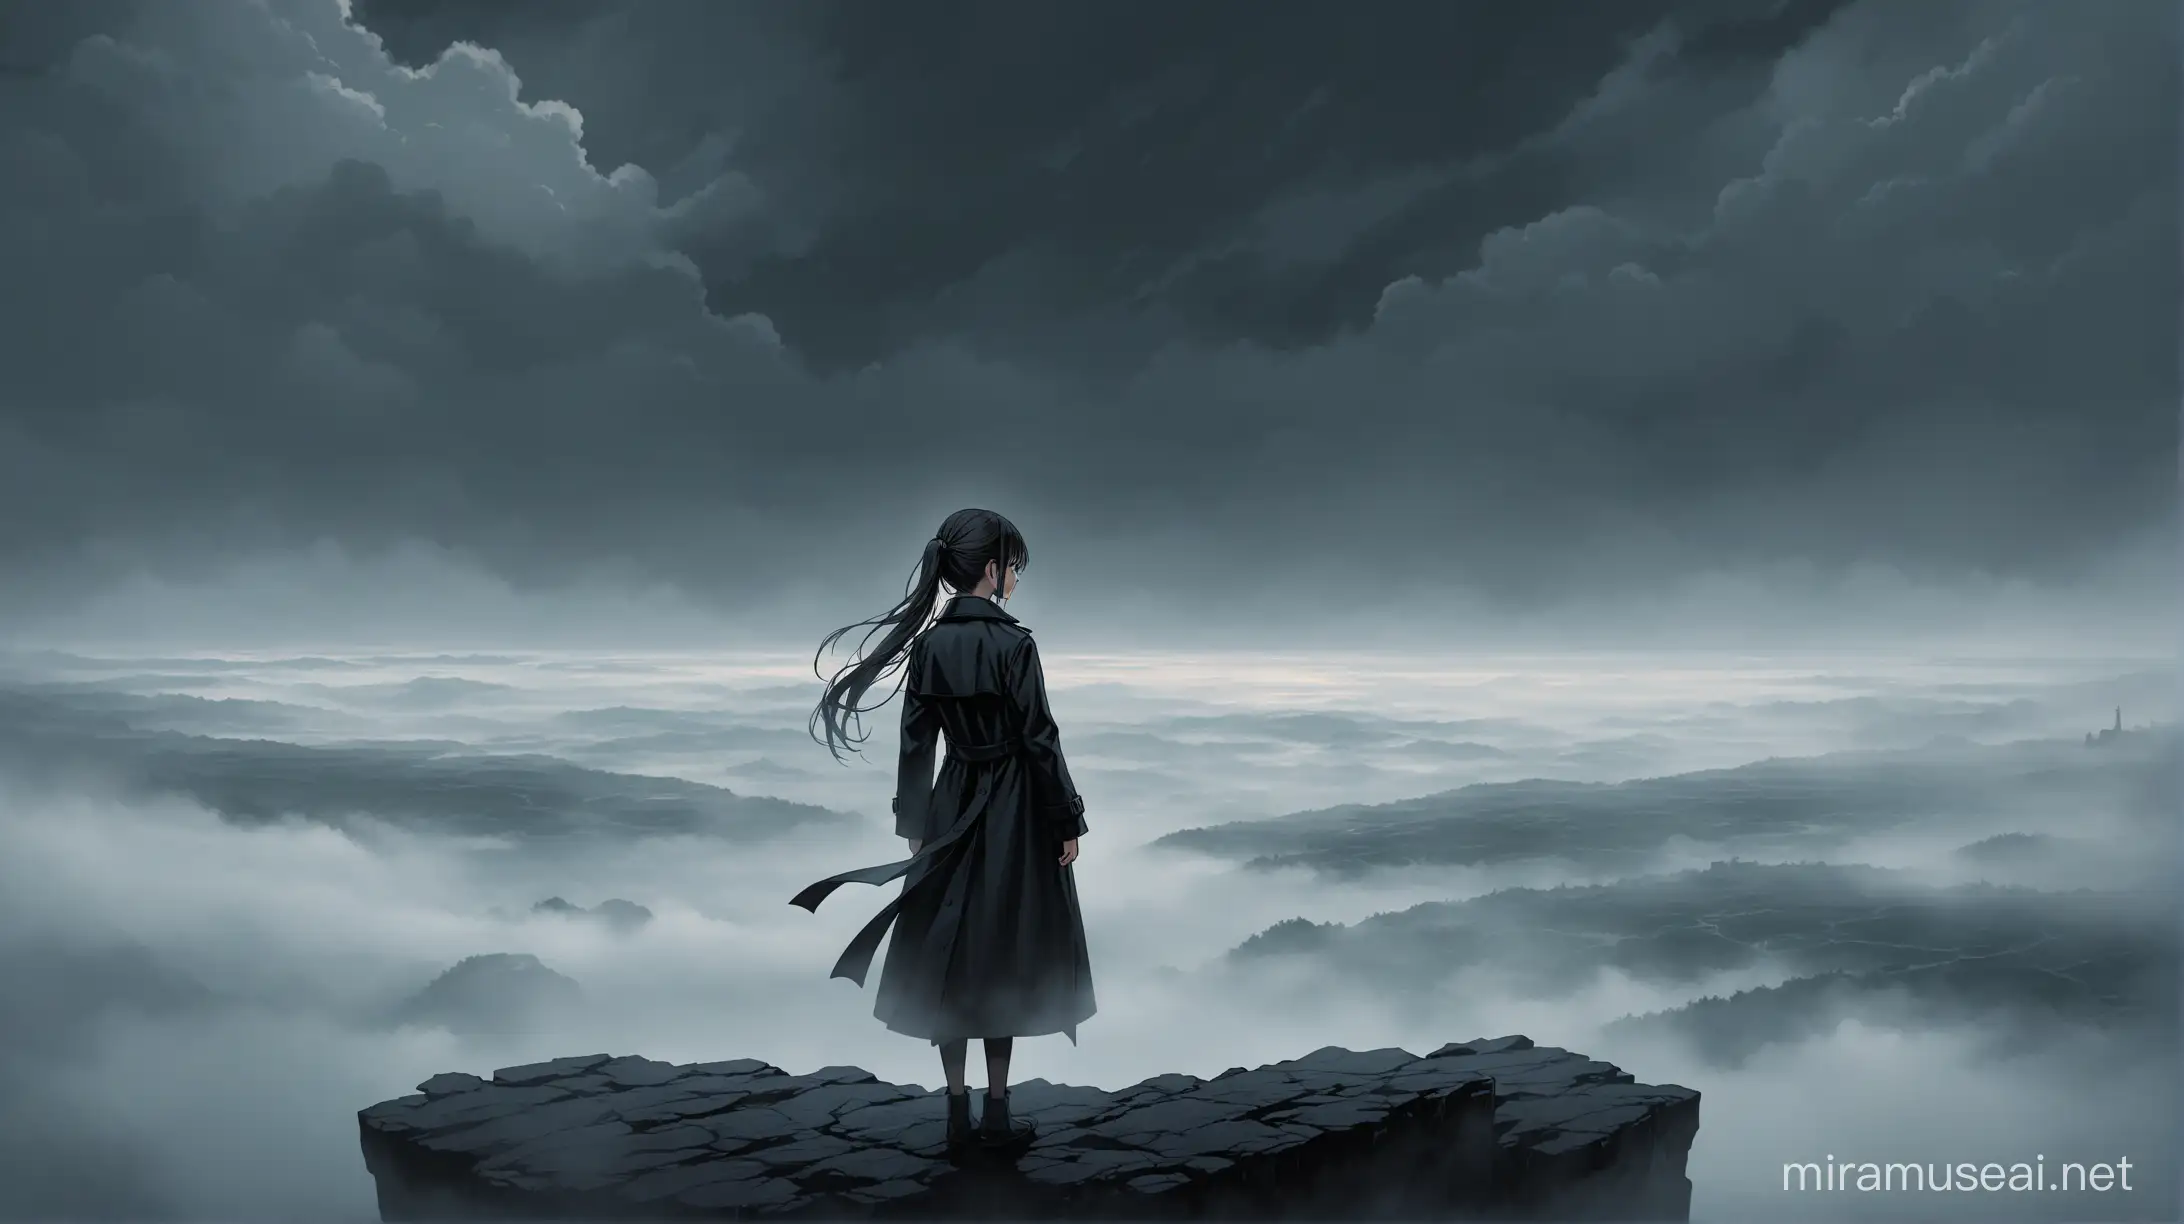 Девушка в черном стренче, с длинными косичками и таинственным взглядом, стоит на краю высокой скалы, окруженной мрачными облаками и туманом.